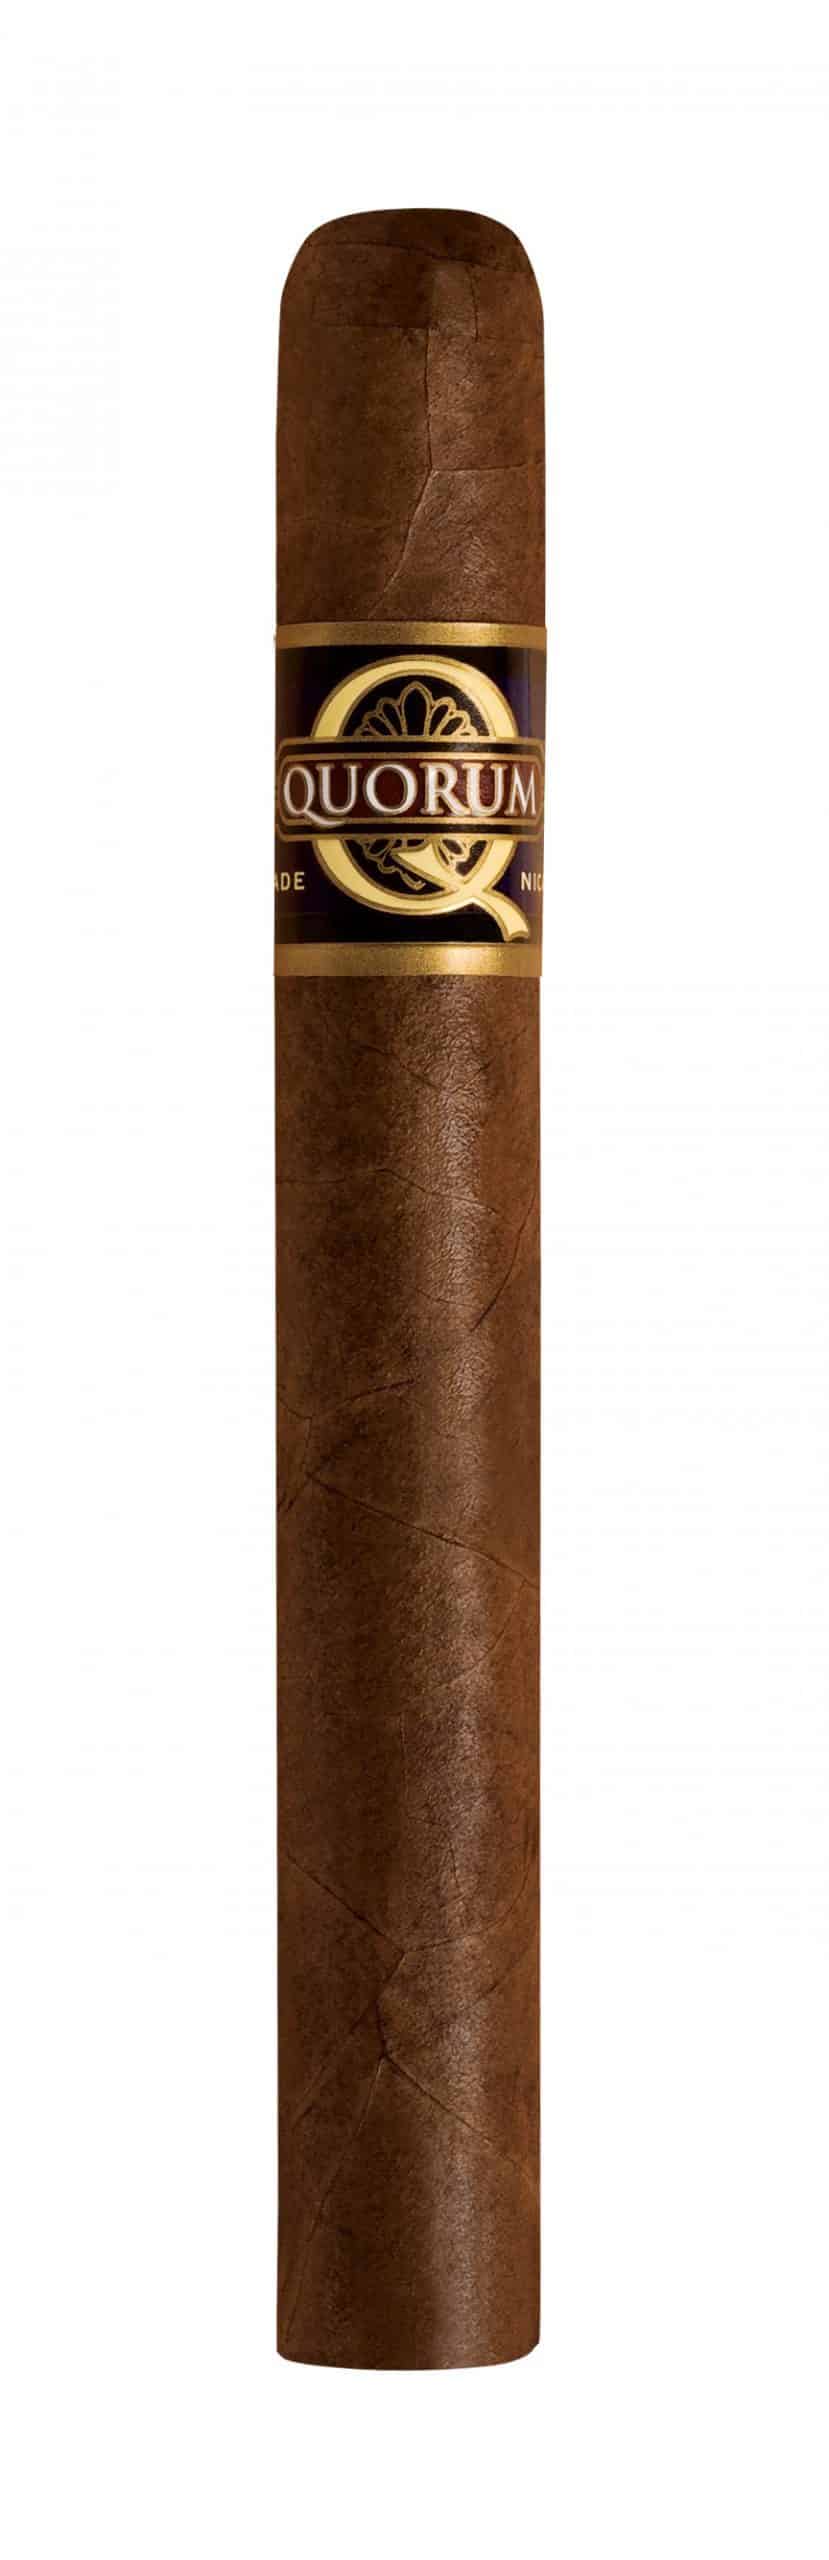 quorum corona single cigar